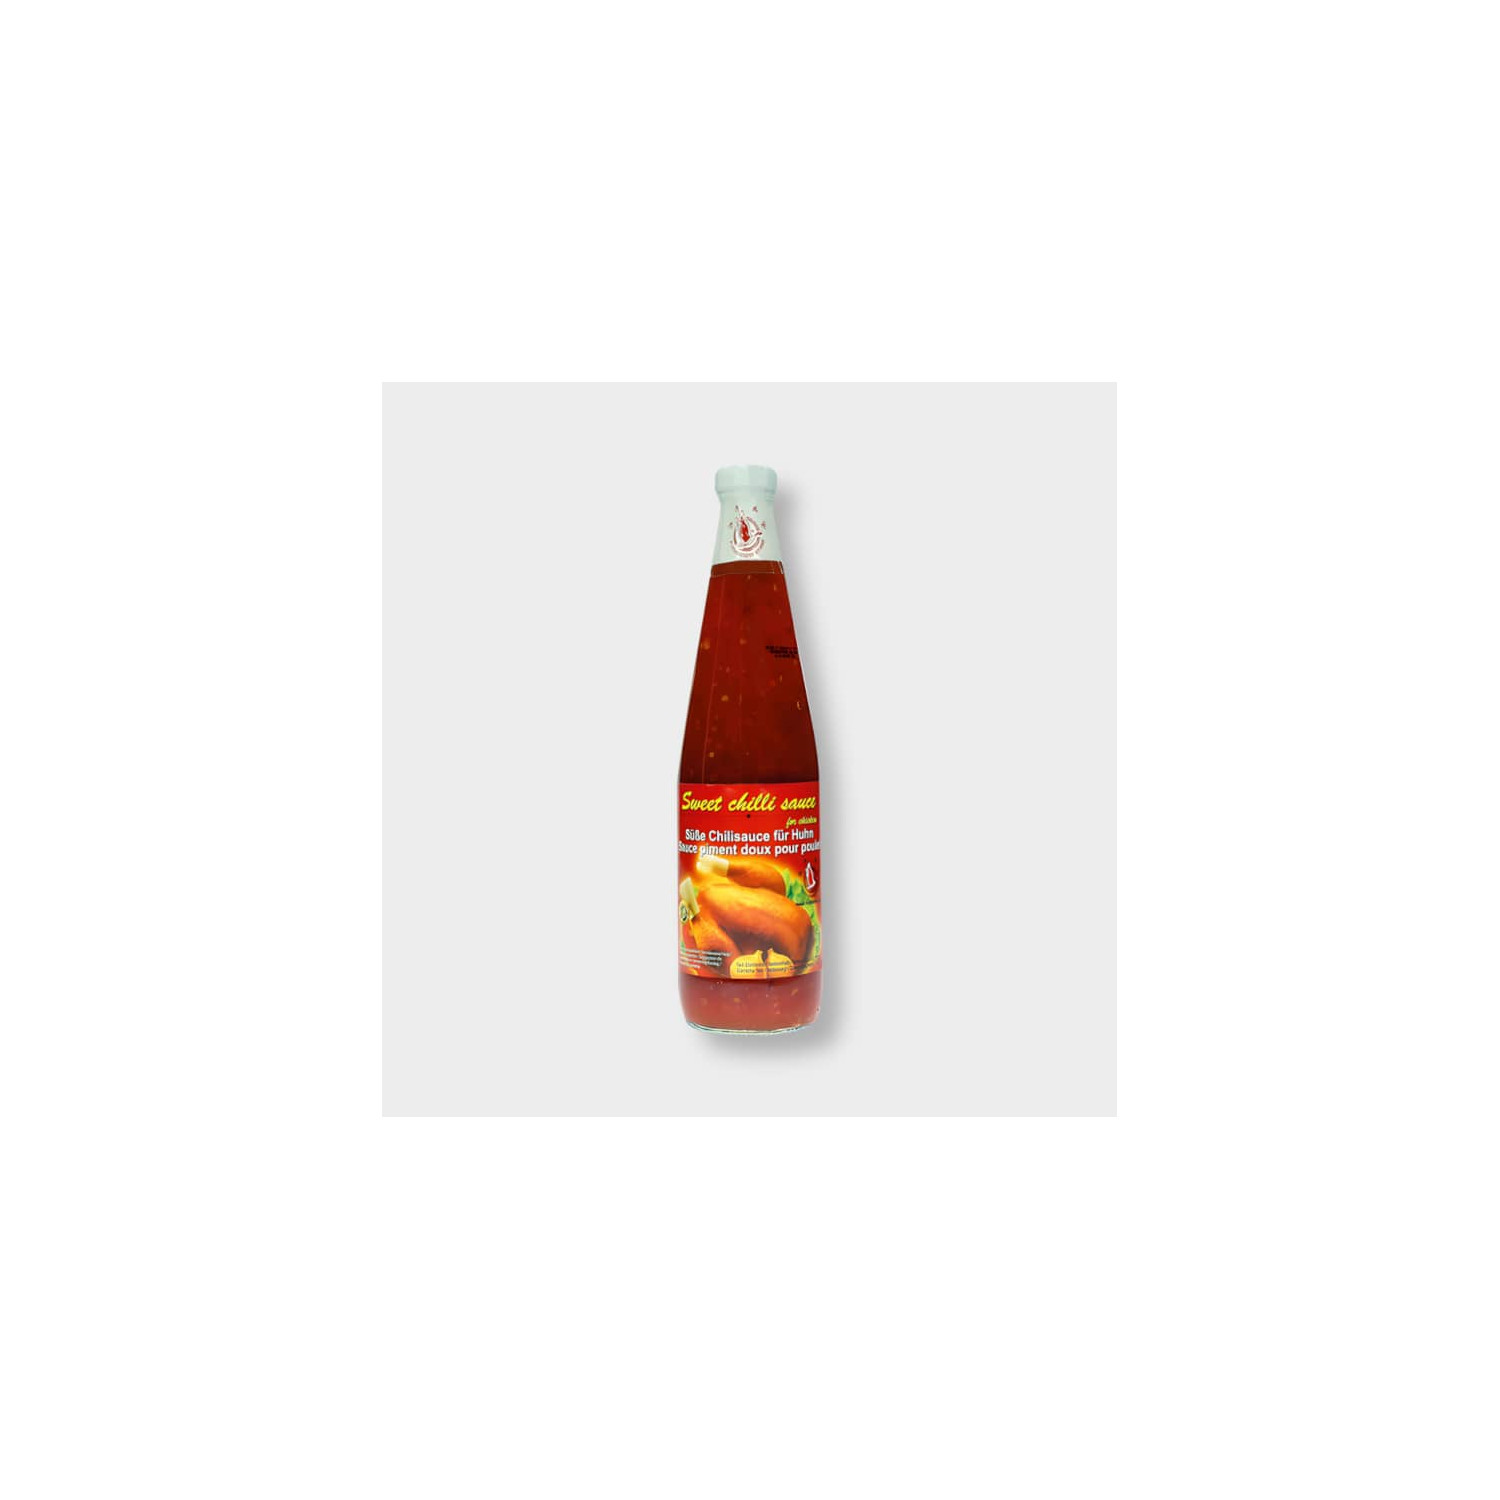 Acheter Sweet Chili Sauce